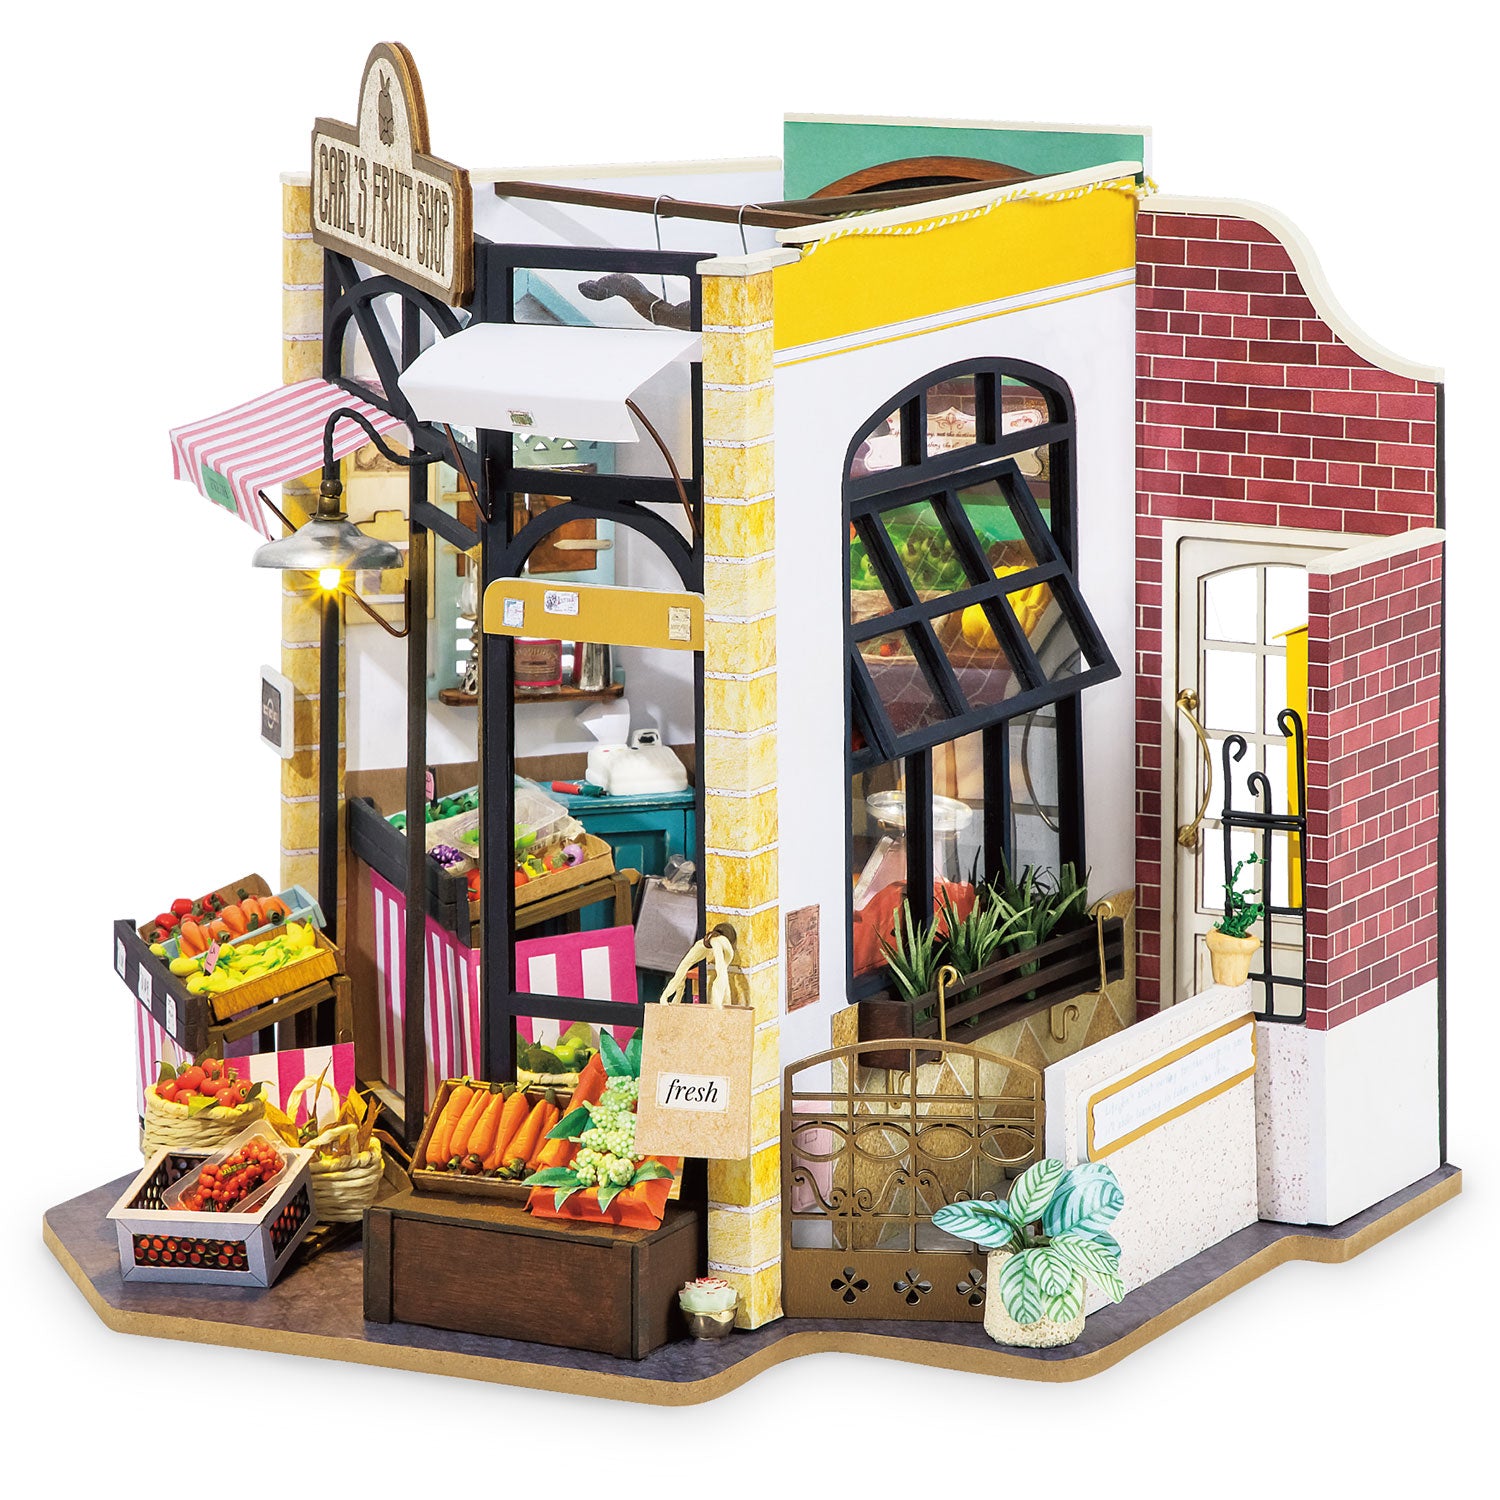 Carl's Fruit Shop (Obstgeschäft)-Miniaturhaus-Robotime--